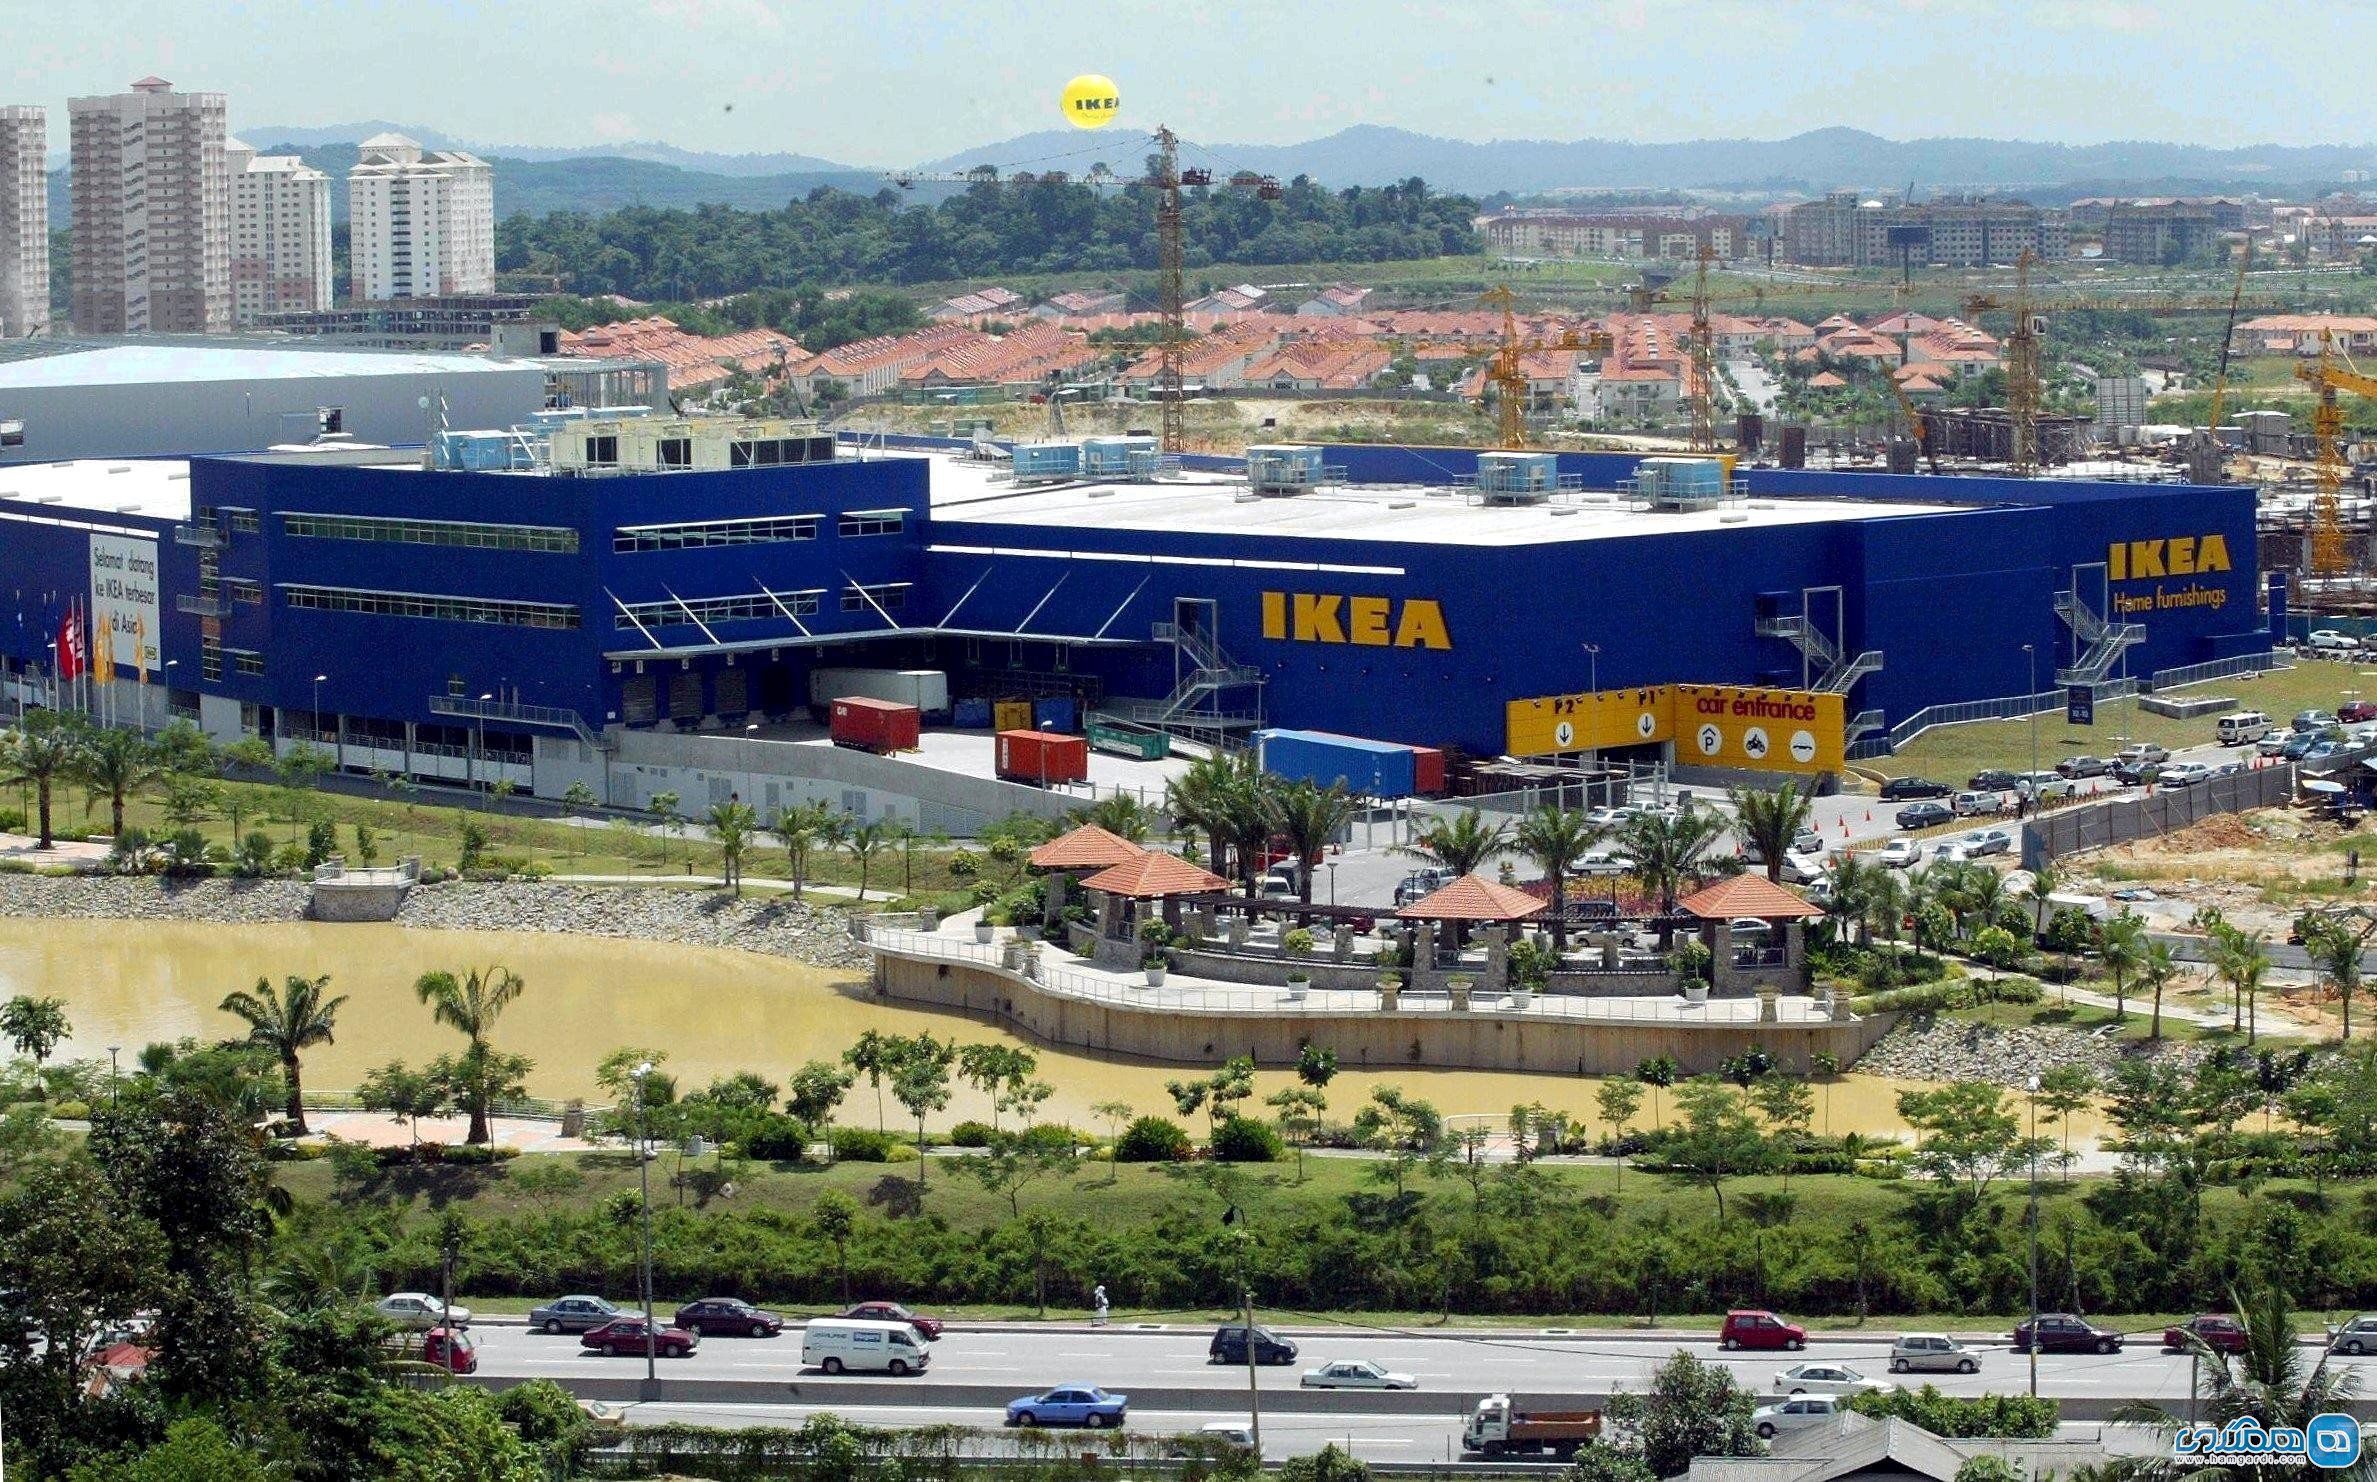 بازار خرید IKEA